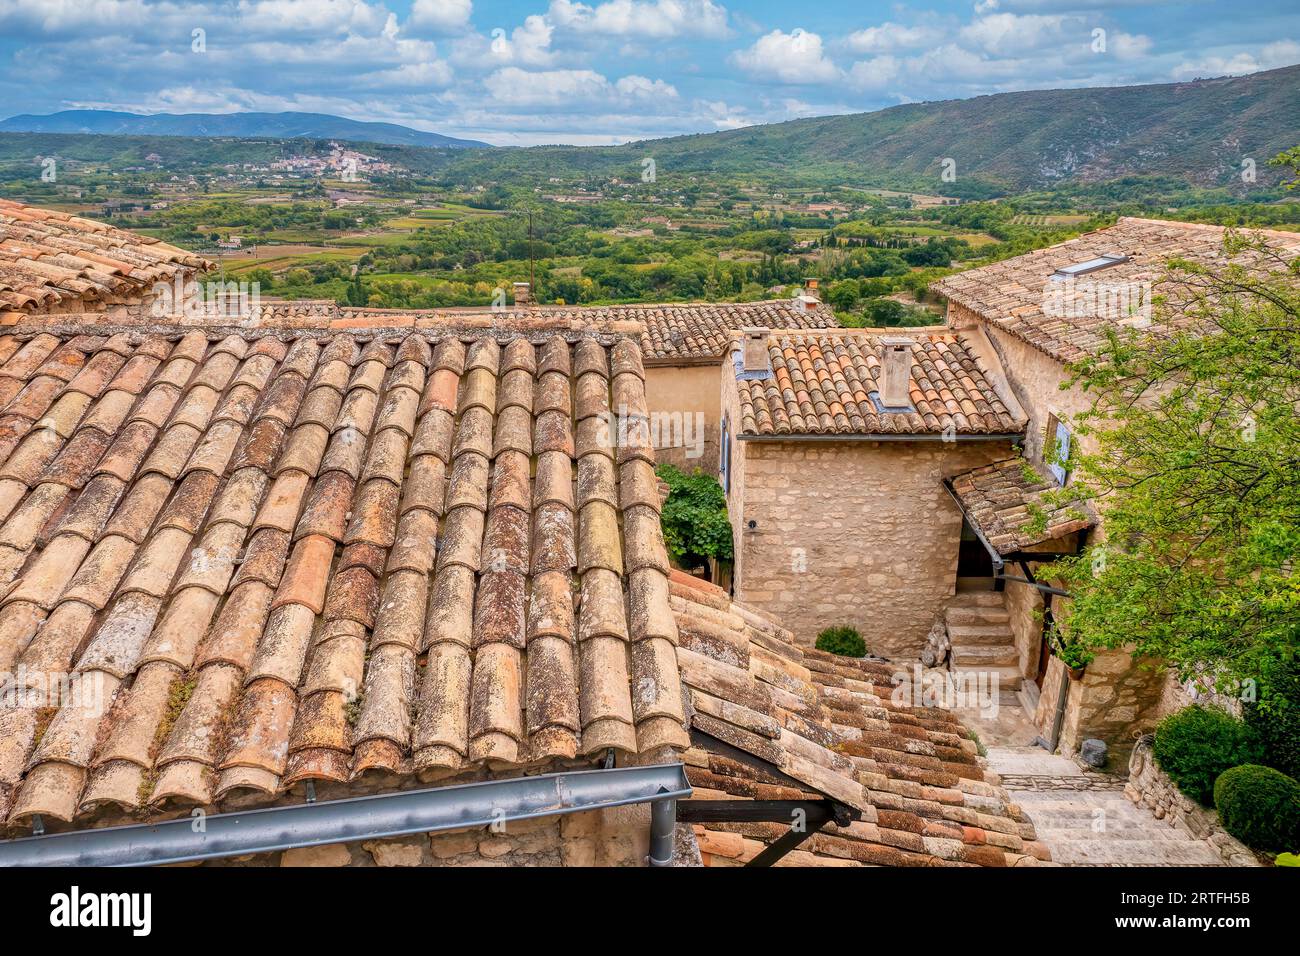 Dans le quartier historique de Lacoste, en Provence, les vieilles maisons traditionnelles en pierre aux toits de tuiles surplombent la campagne française luxuriante, avec le village de Bonnieux visibl Banque D'Images